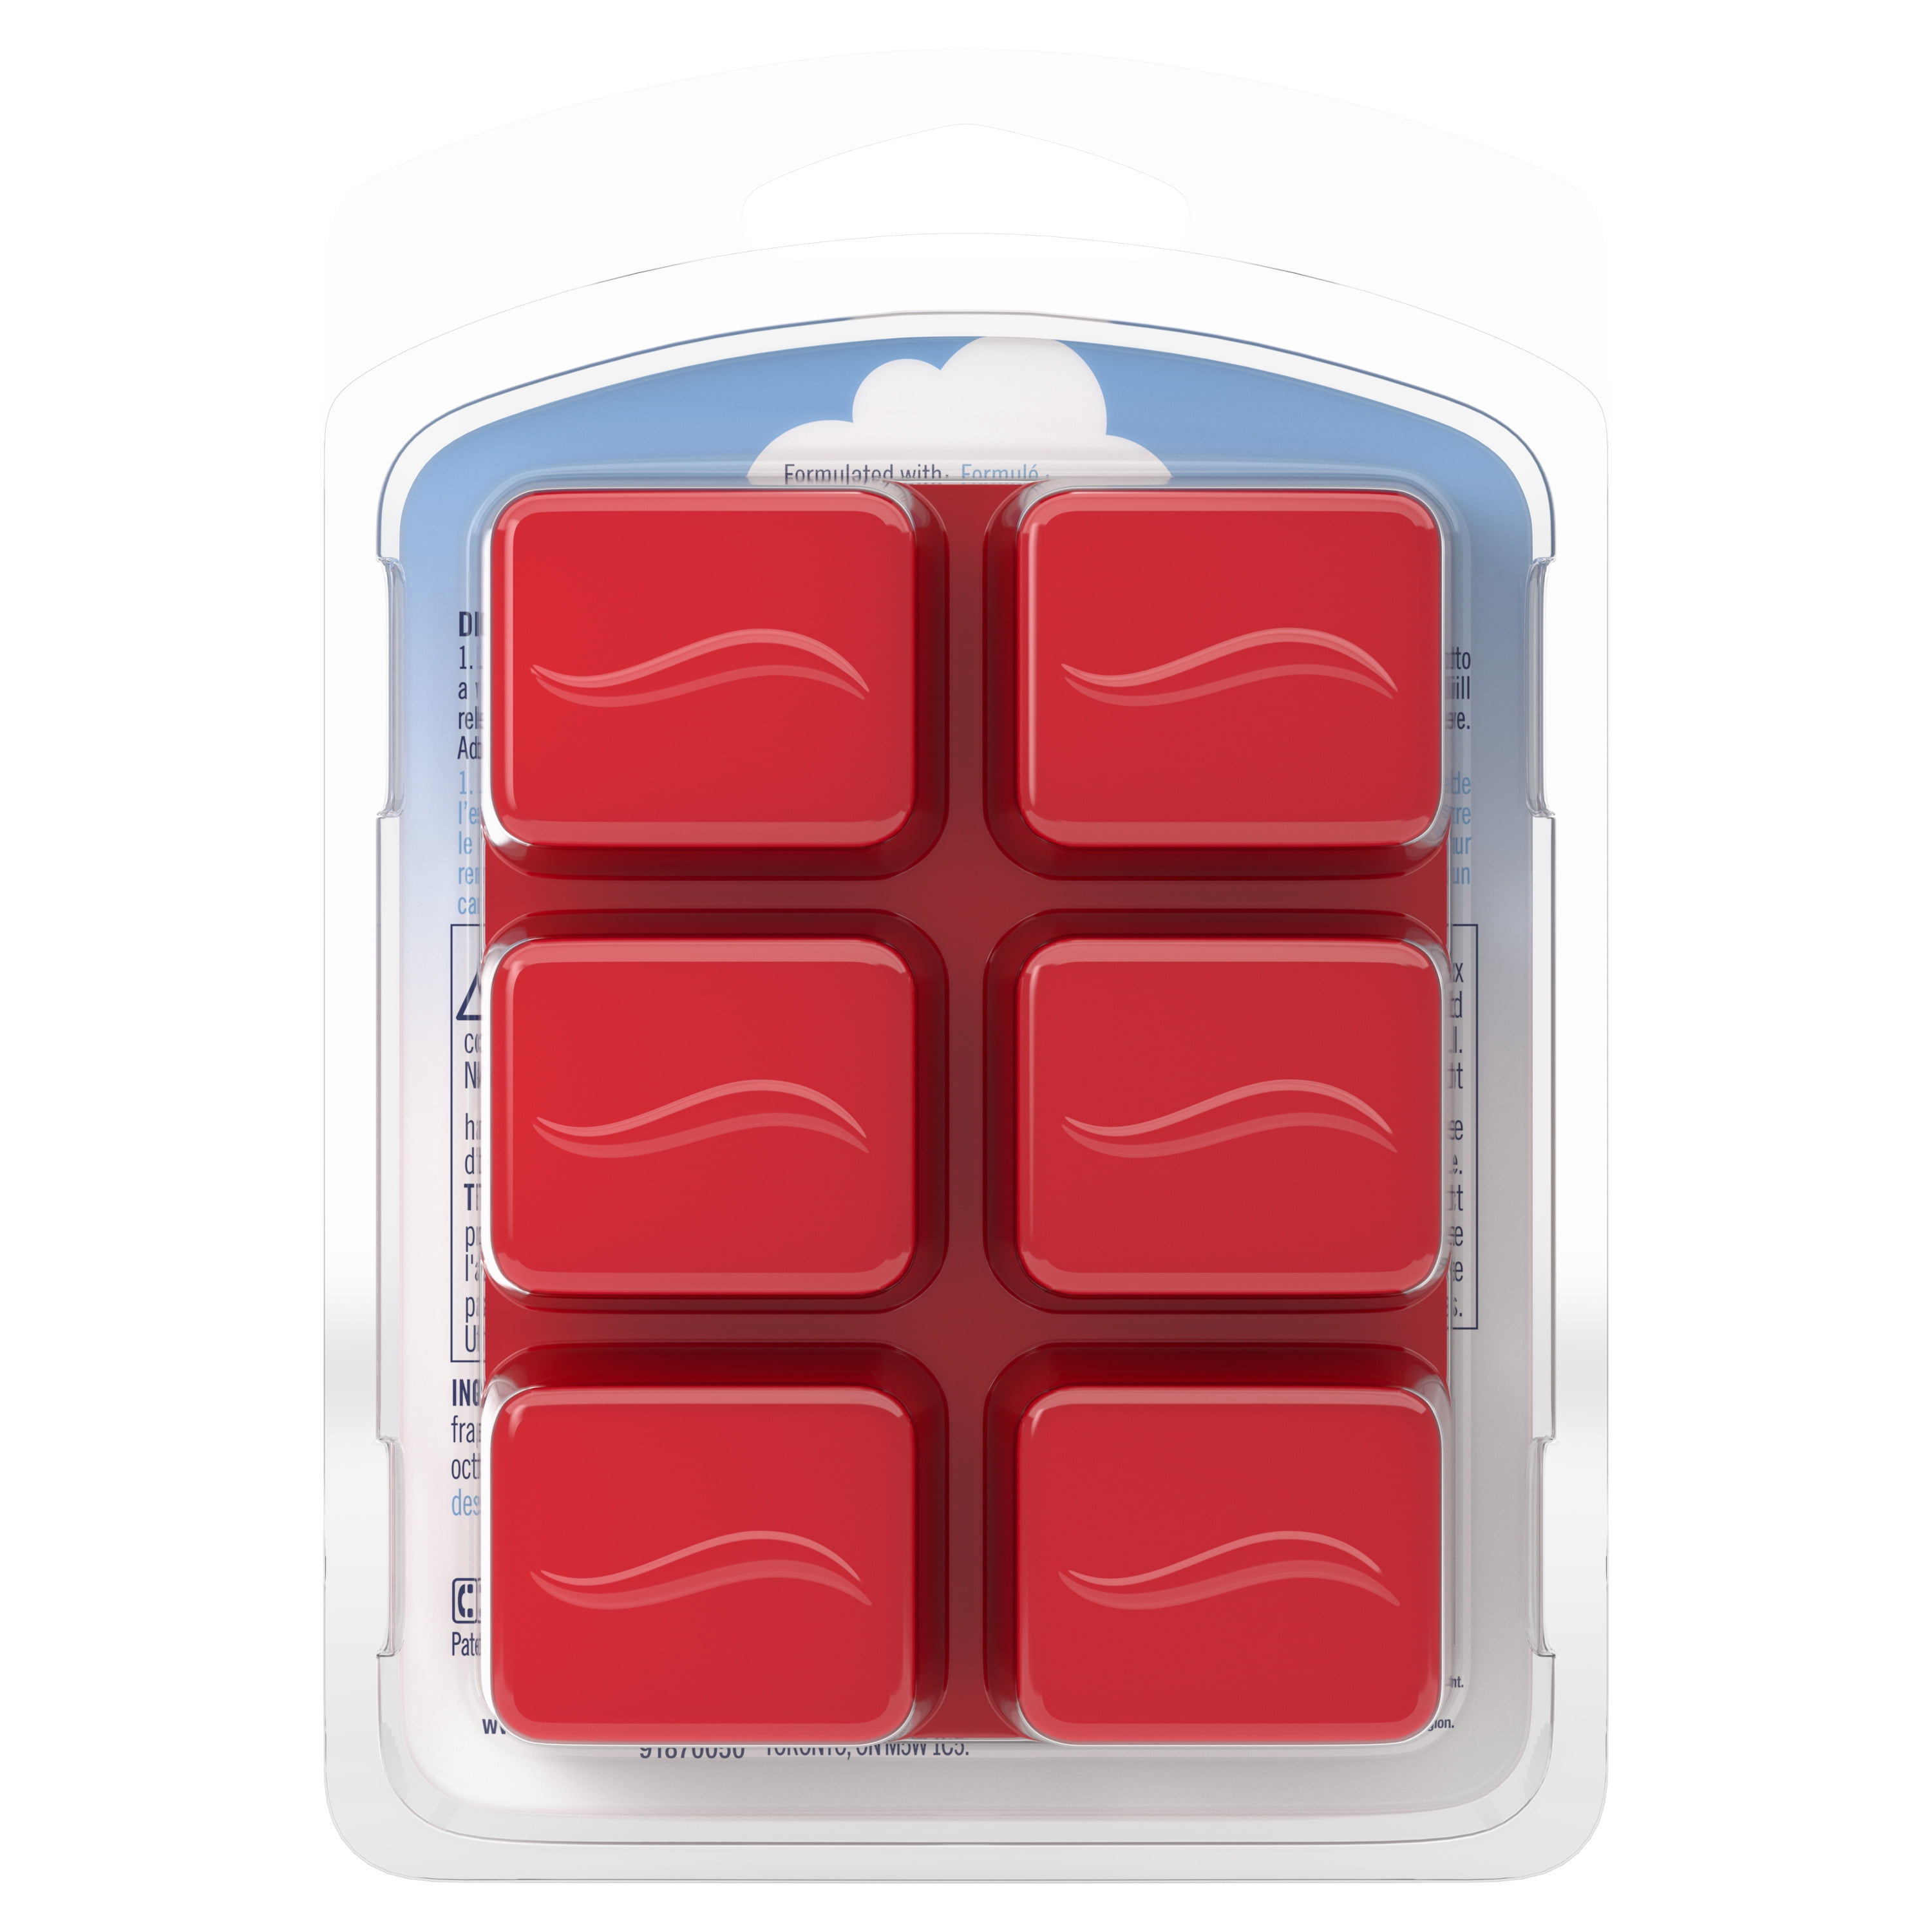 Febreze Odor-Eliminating Scented Wax Melts Guava & Vanilla Scent, 2.75 oz. Wax Melts (6 Cubes)